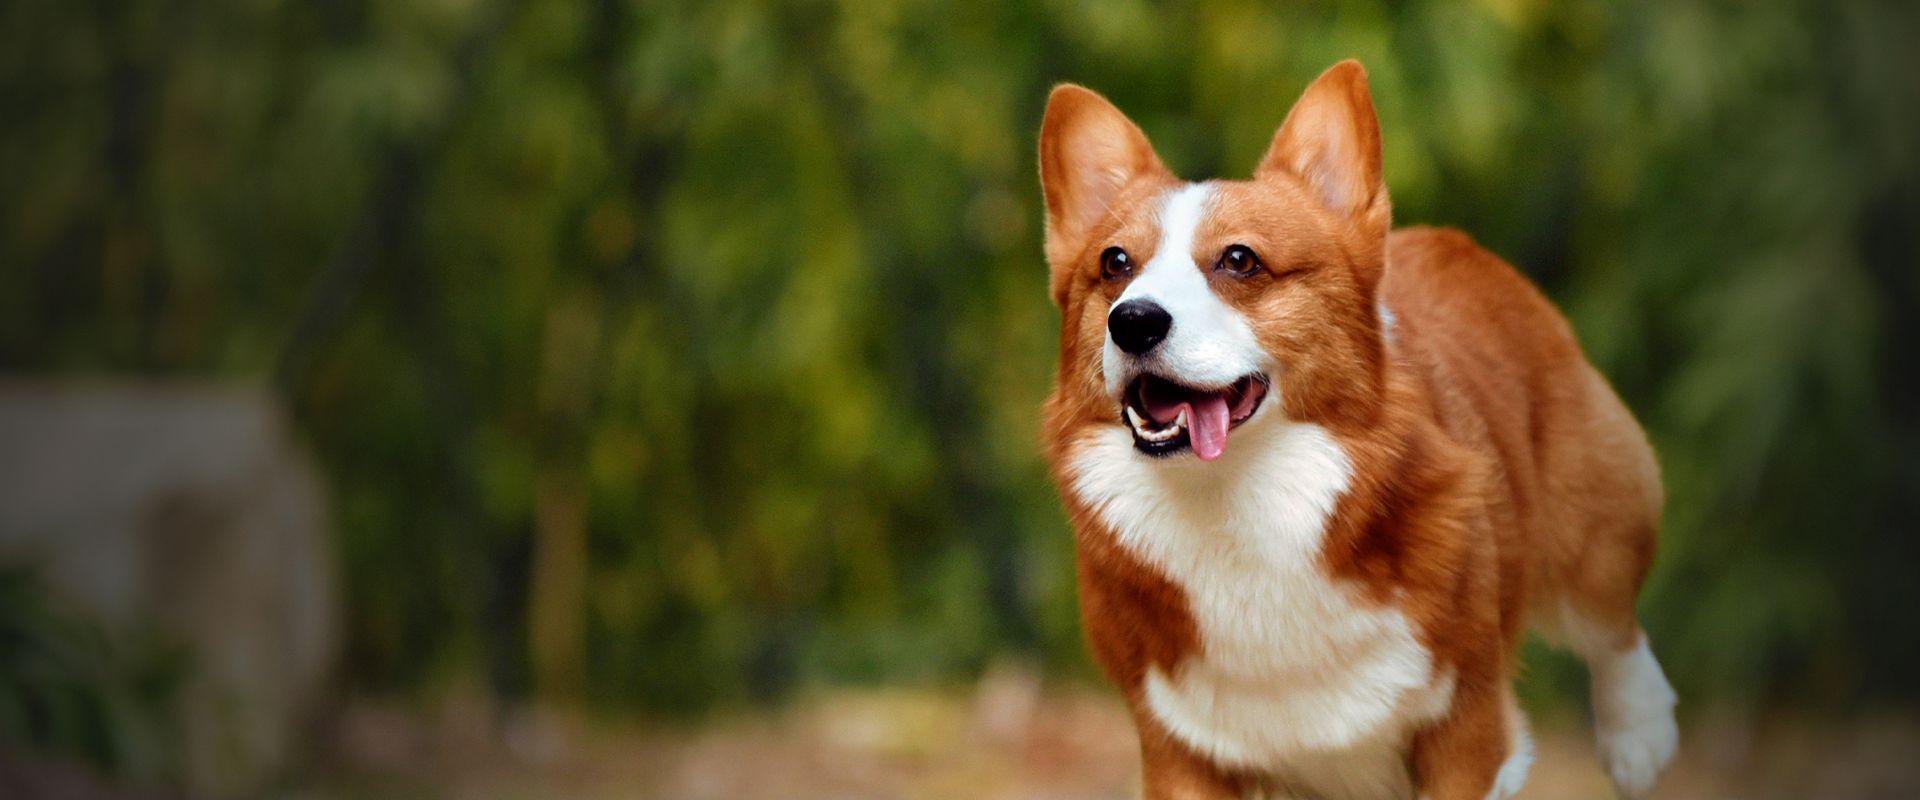 smiling corgi dog running